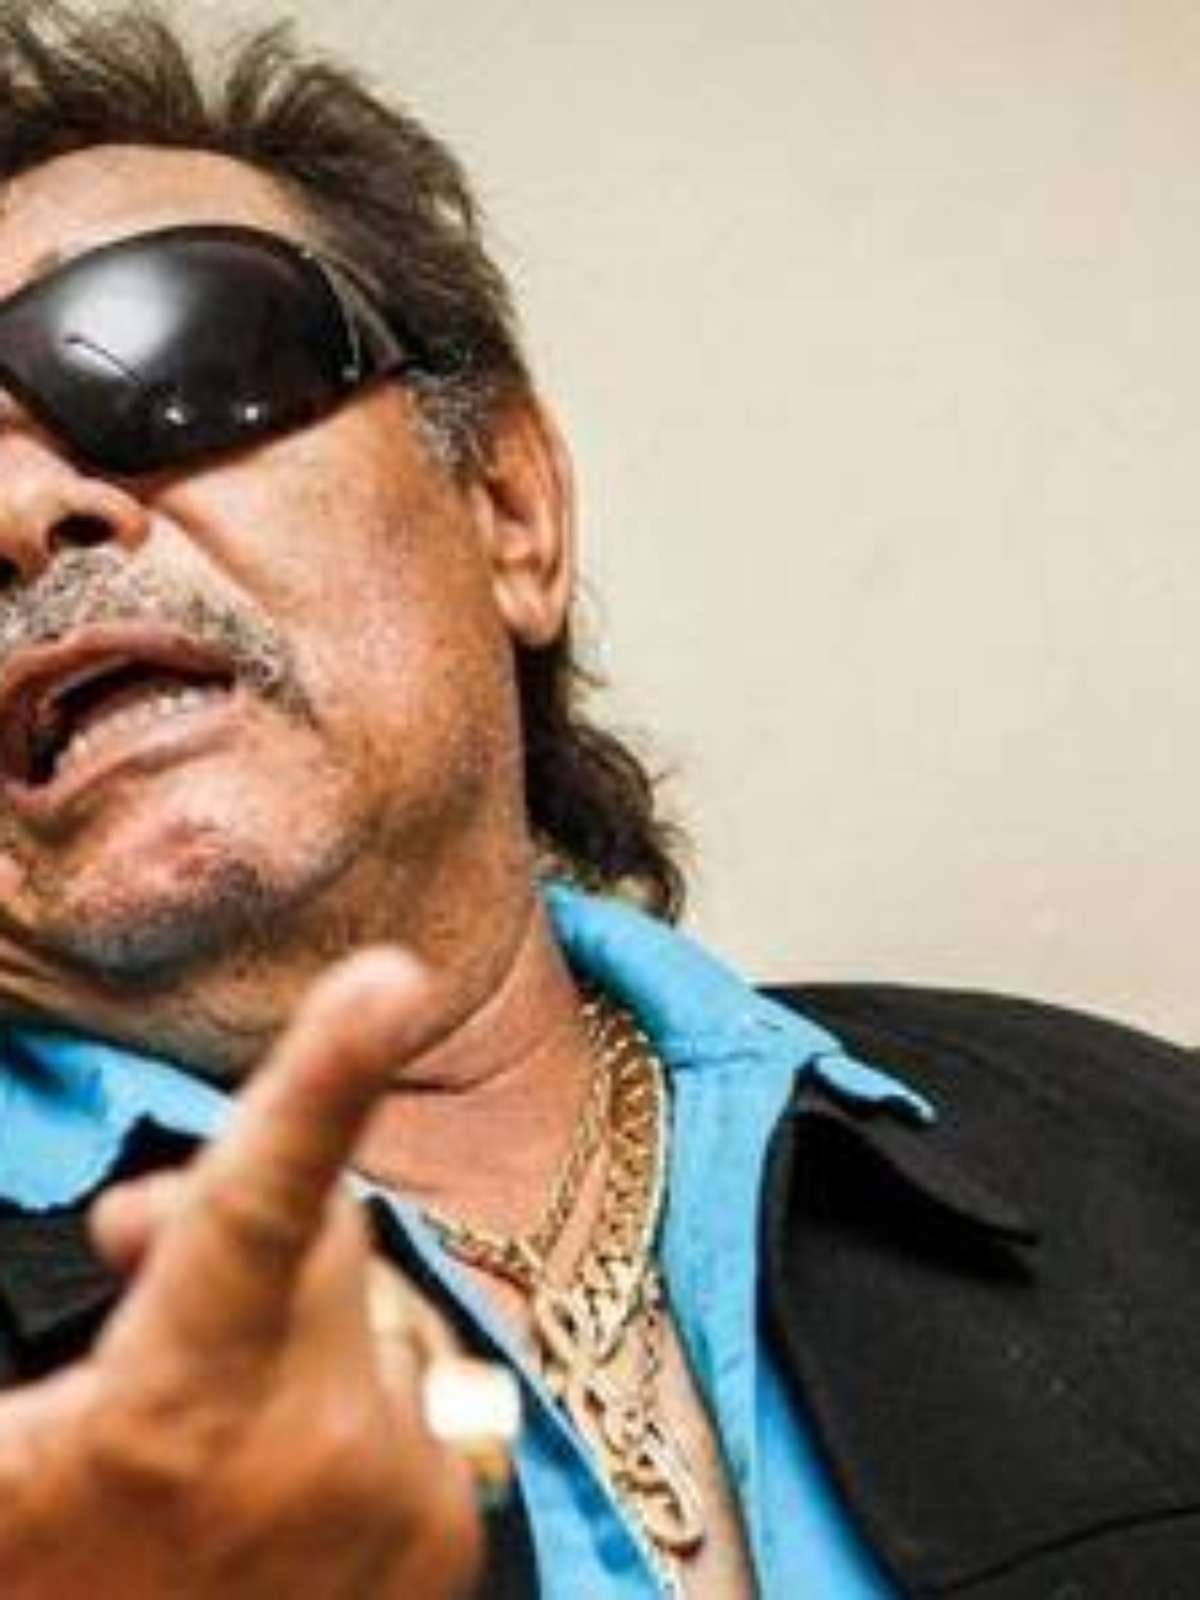 Morre cantor sertanejo José Rico, parceiro de Milionário - Jornal